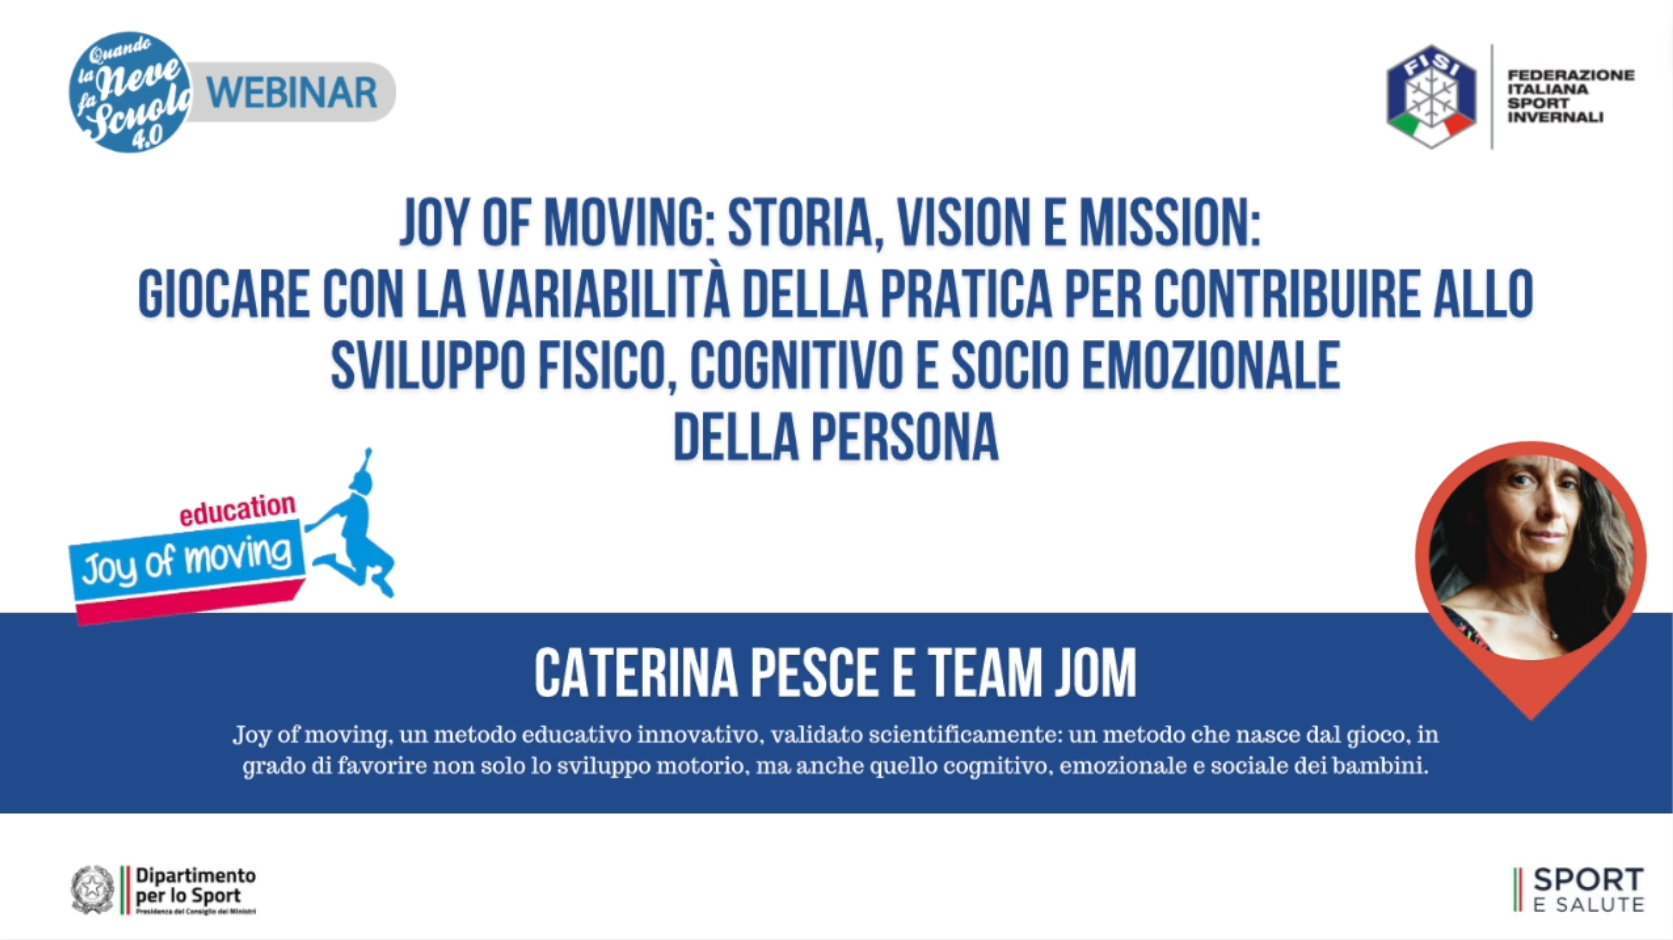 Webinar FISI | Joy of moving: storia, vision e mission: intervento di Caterina Pesce | FISI TV